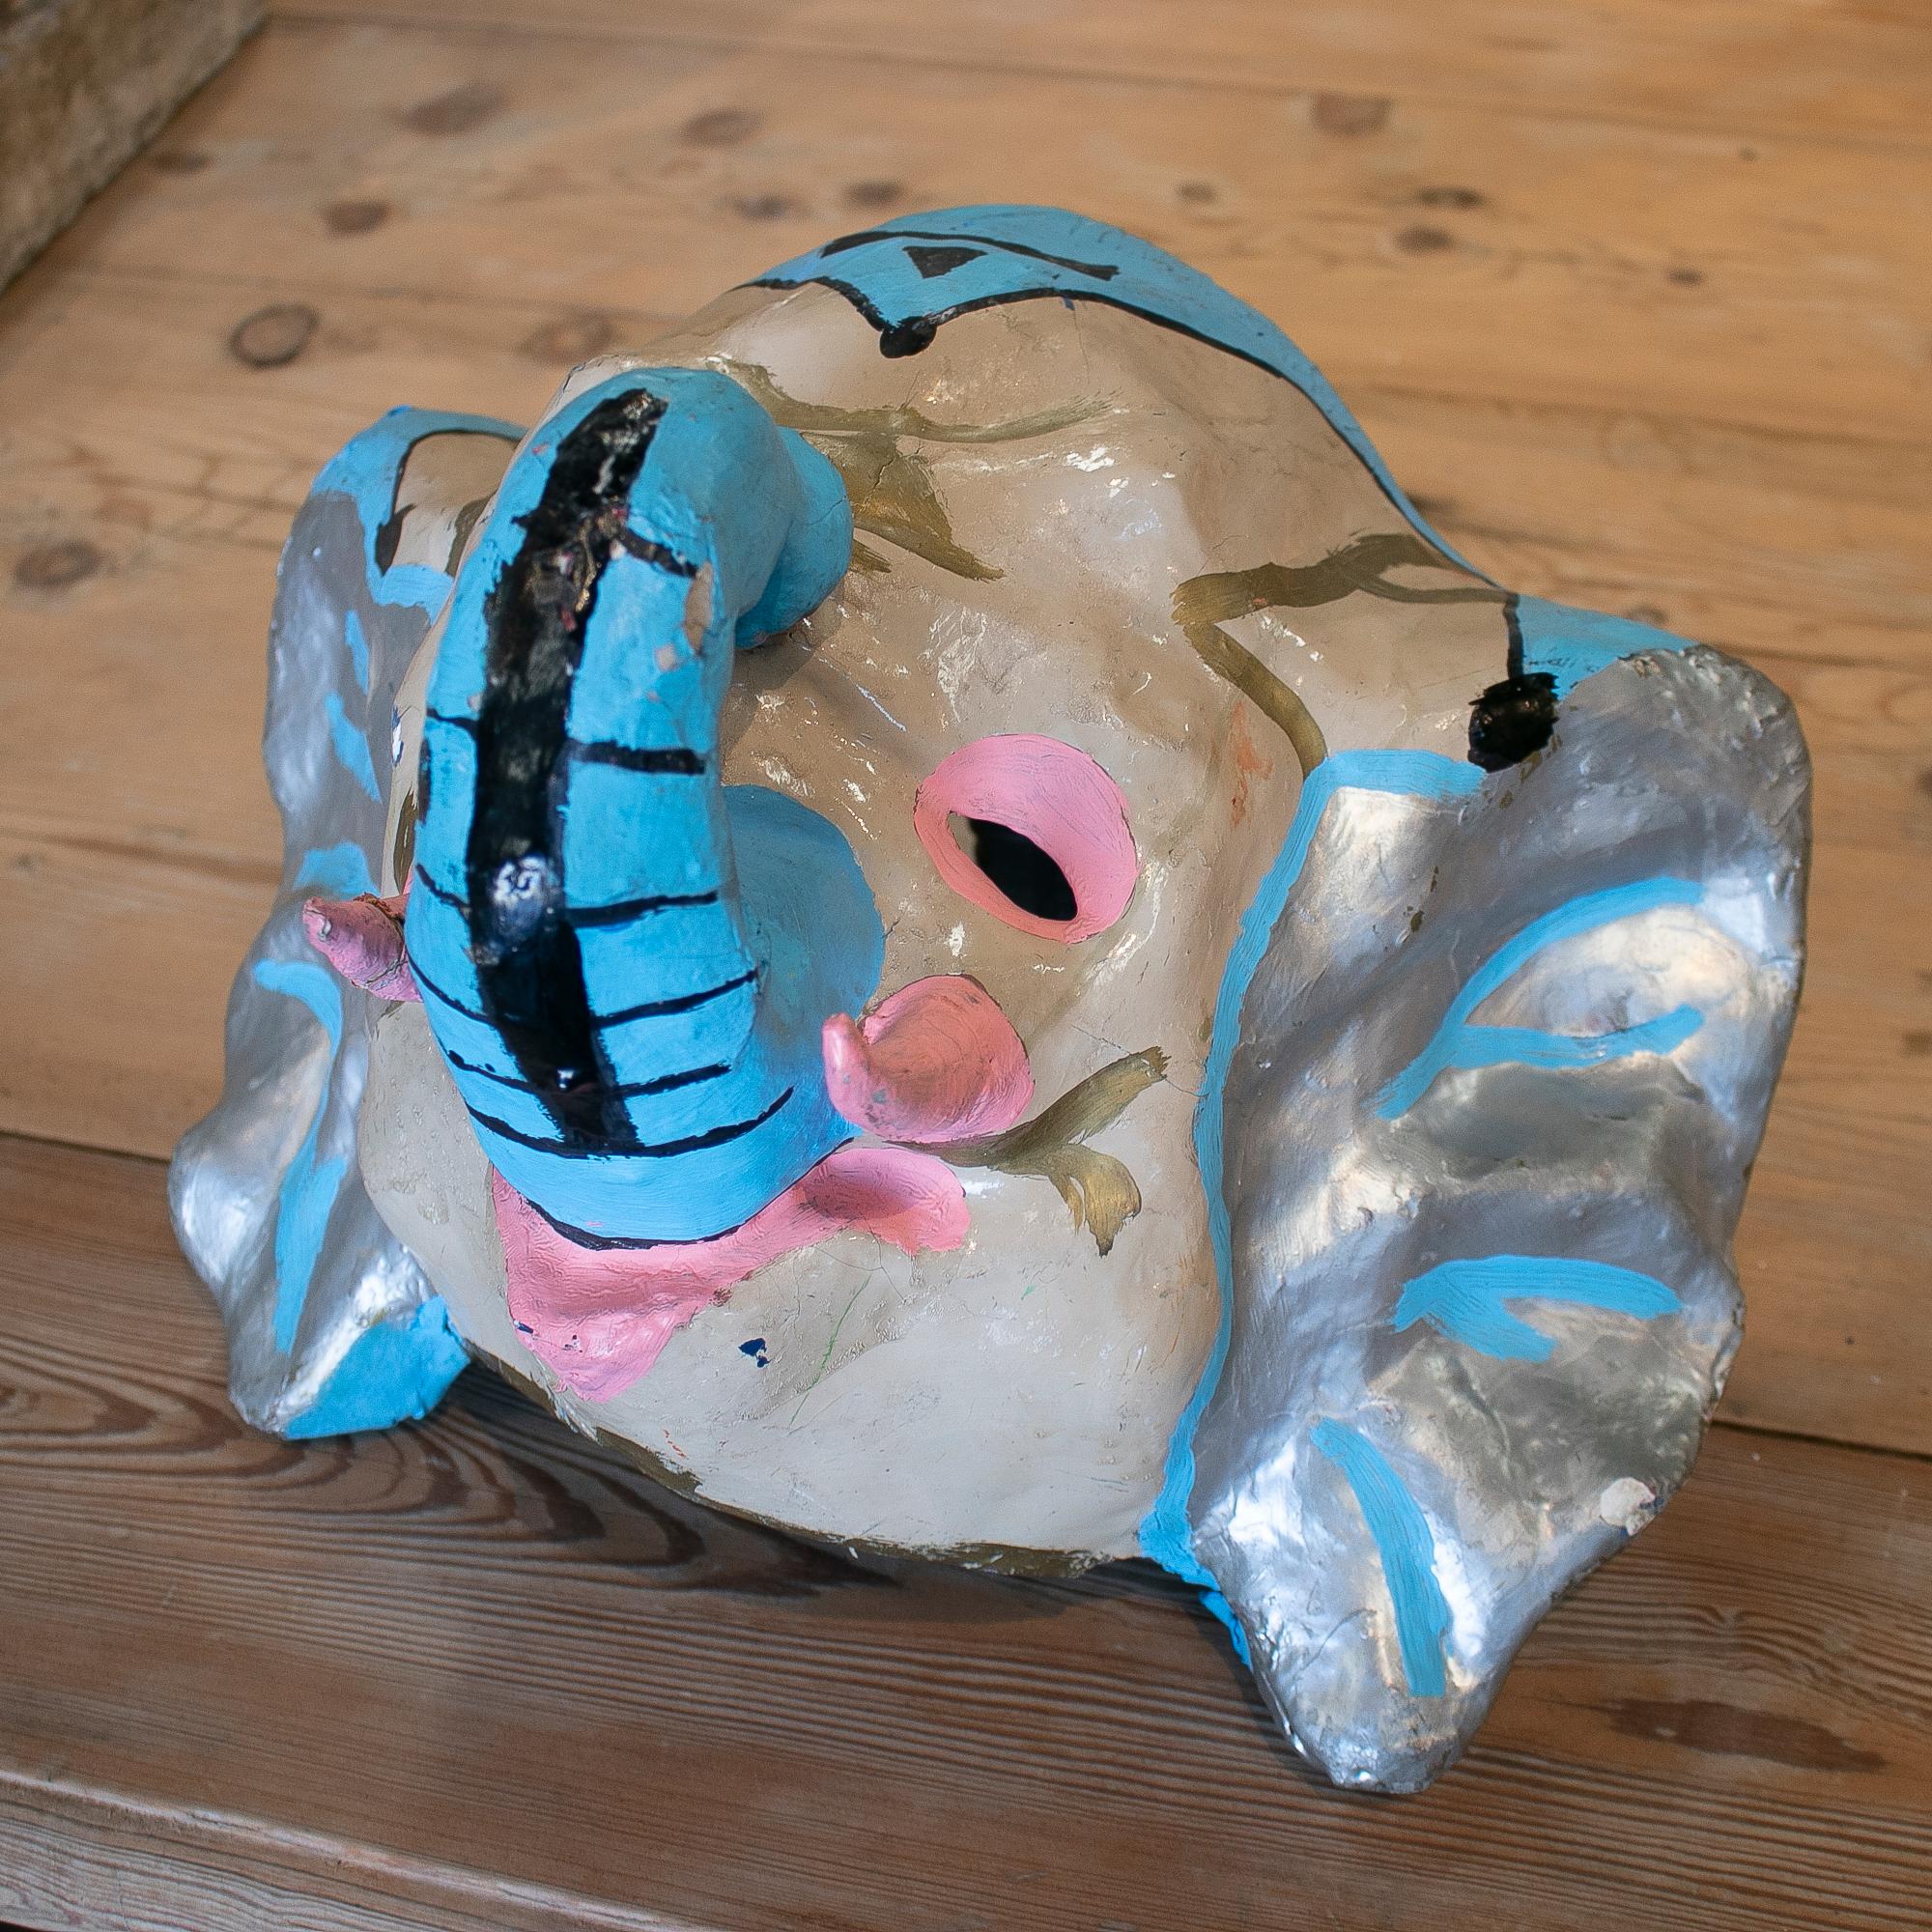 Beliebte spanische Elefantenkopfmaske aus handbemaltem Pappmaché aus den 1950er Jahren, die bei Dorffesten getragen wurde.
  